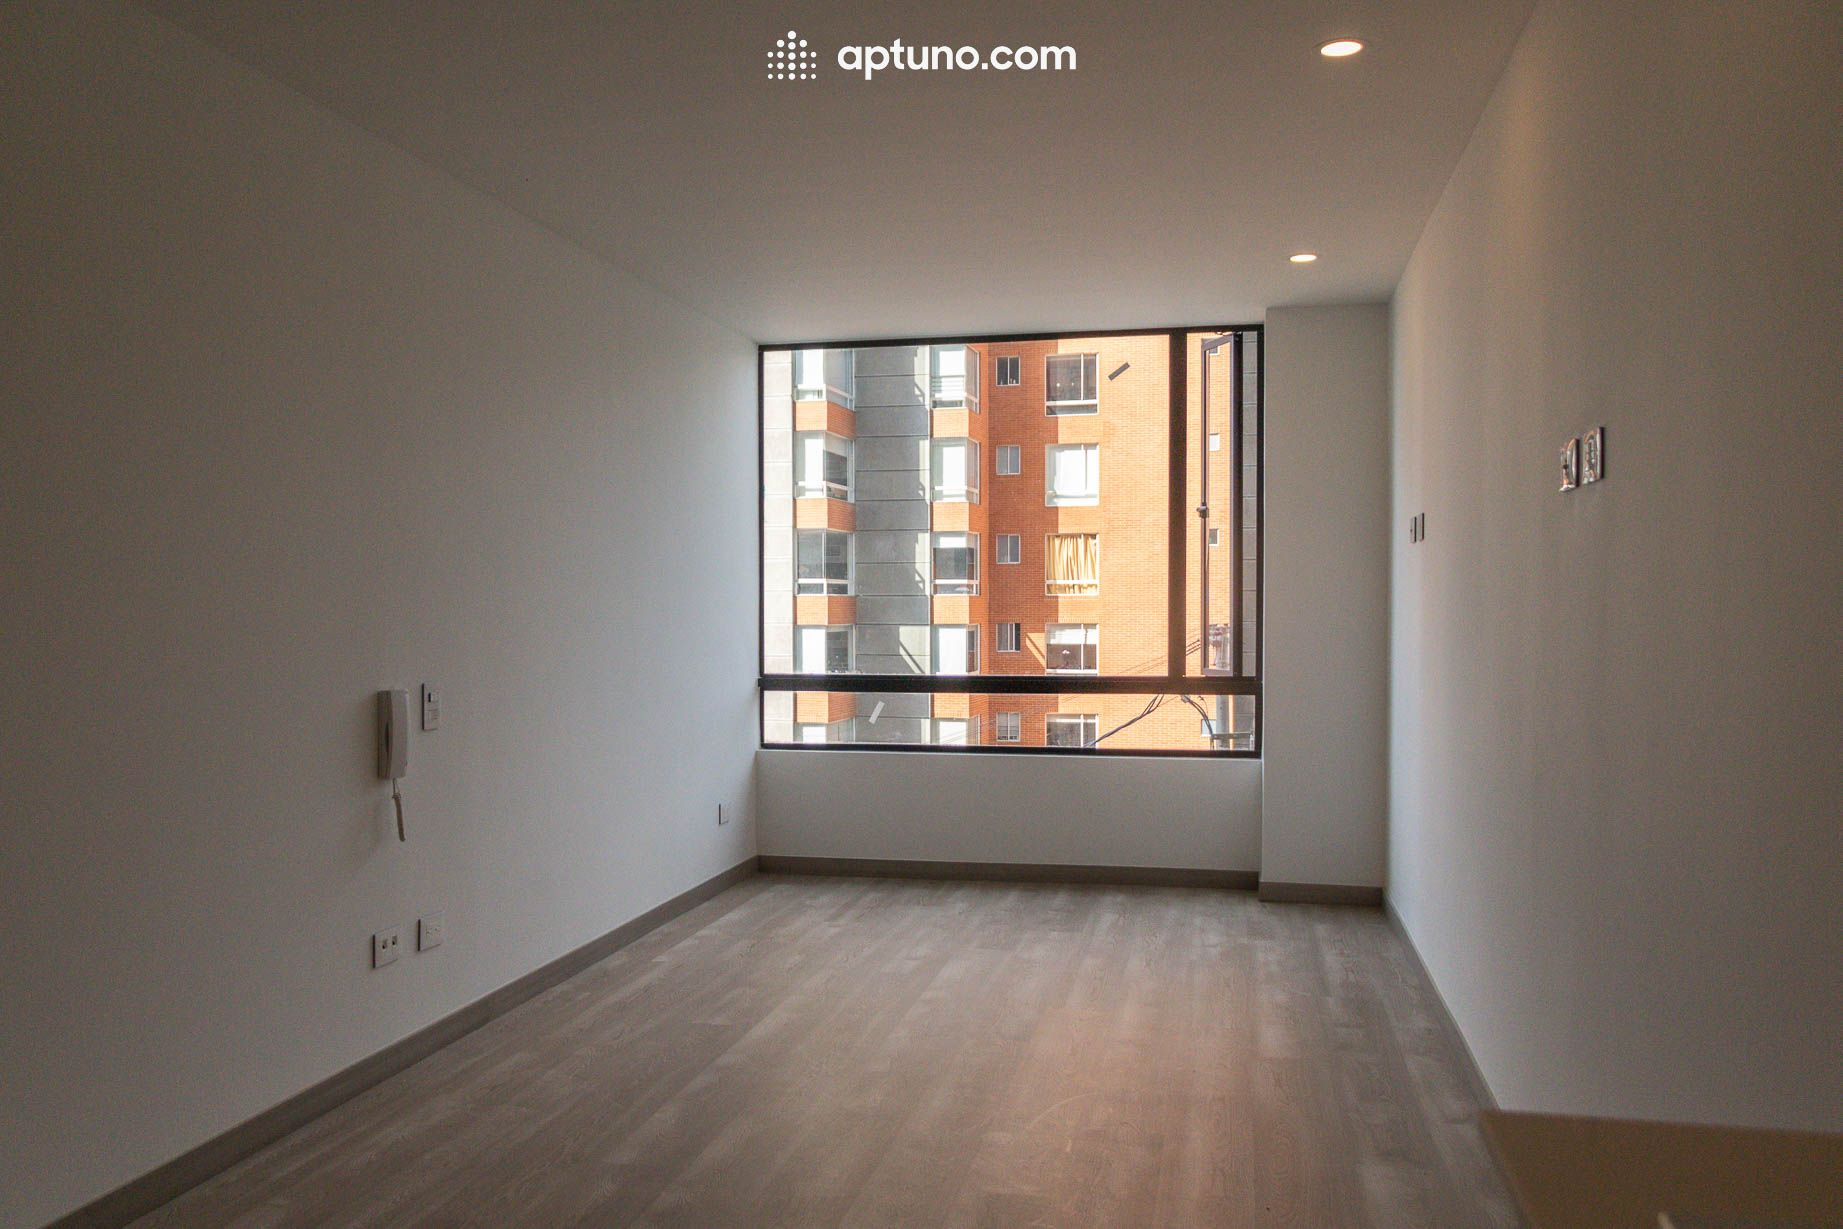 Apartamento en arriendo María Cristina 30 m² - $ 1.400.000